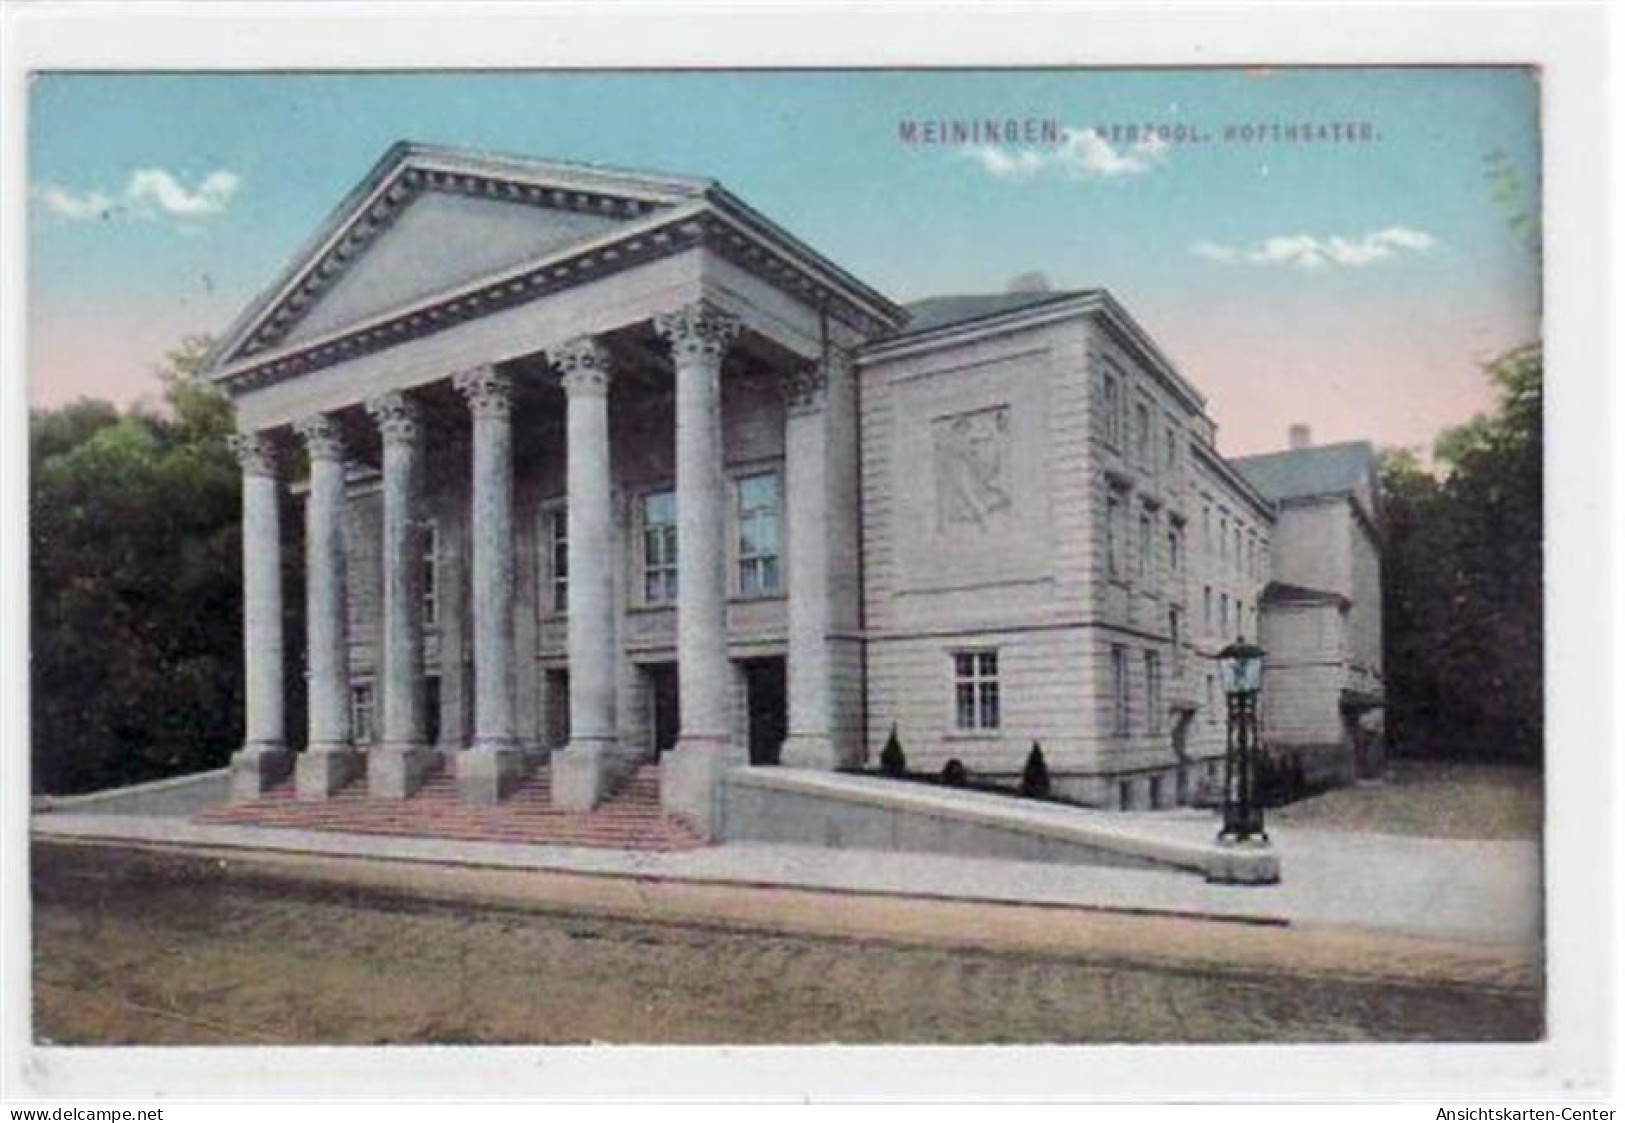 39013707 - Meiningen Mit Herzogl. Hoftheater Gelaufen Und Bahnpoststempel Von 1914. Gute Erhaltung. - Meiningen